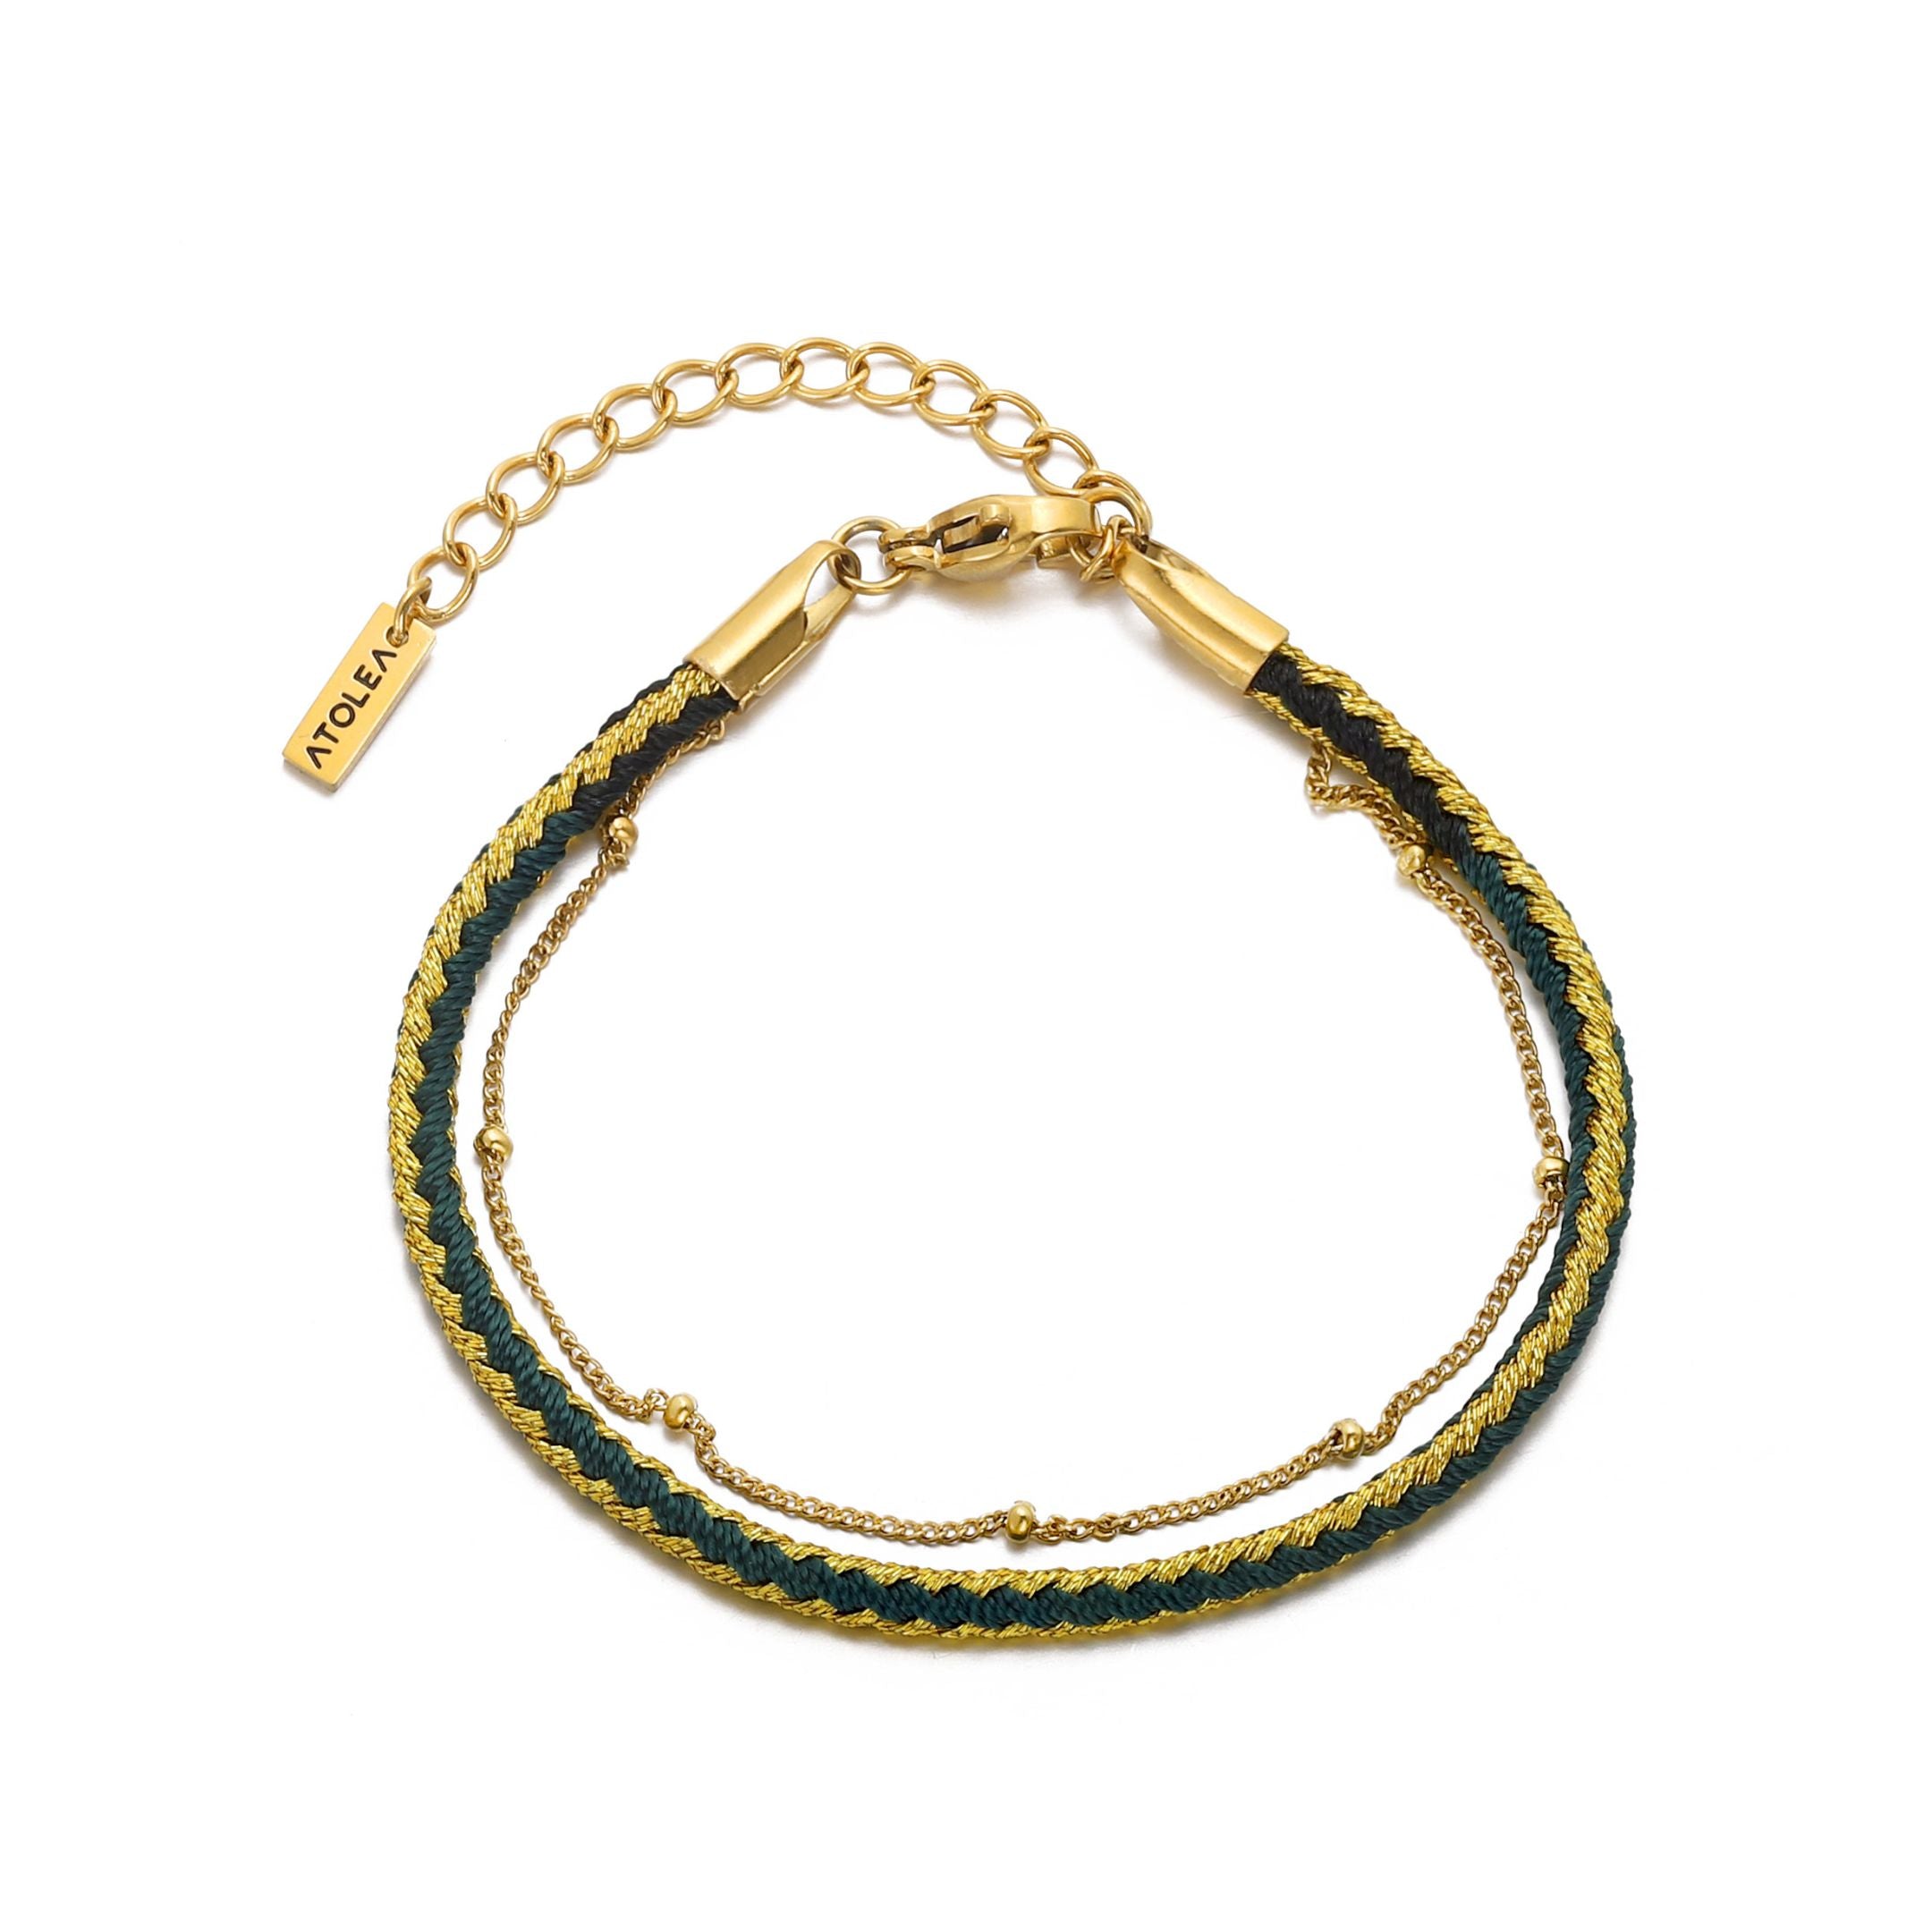 green gold bracelet